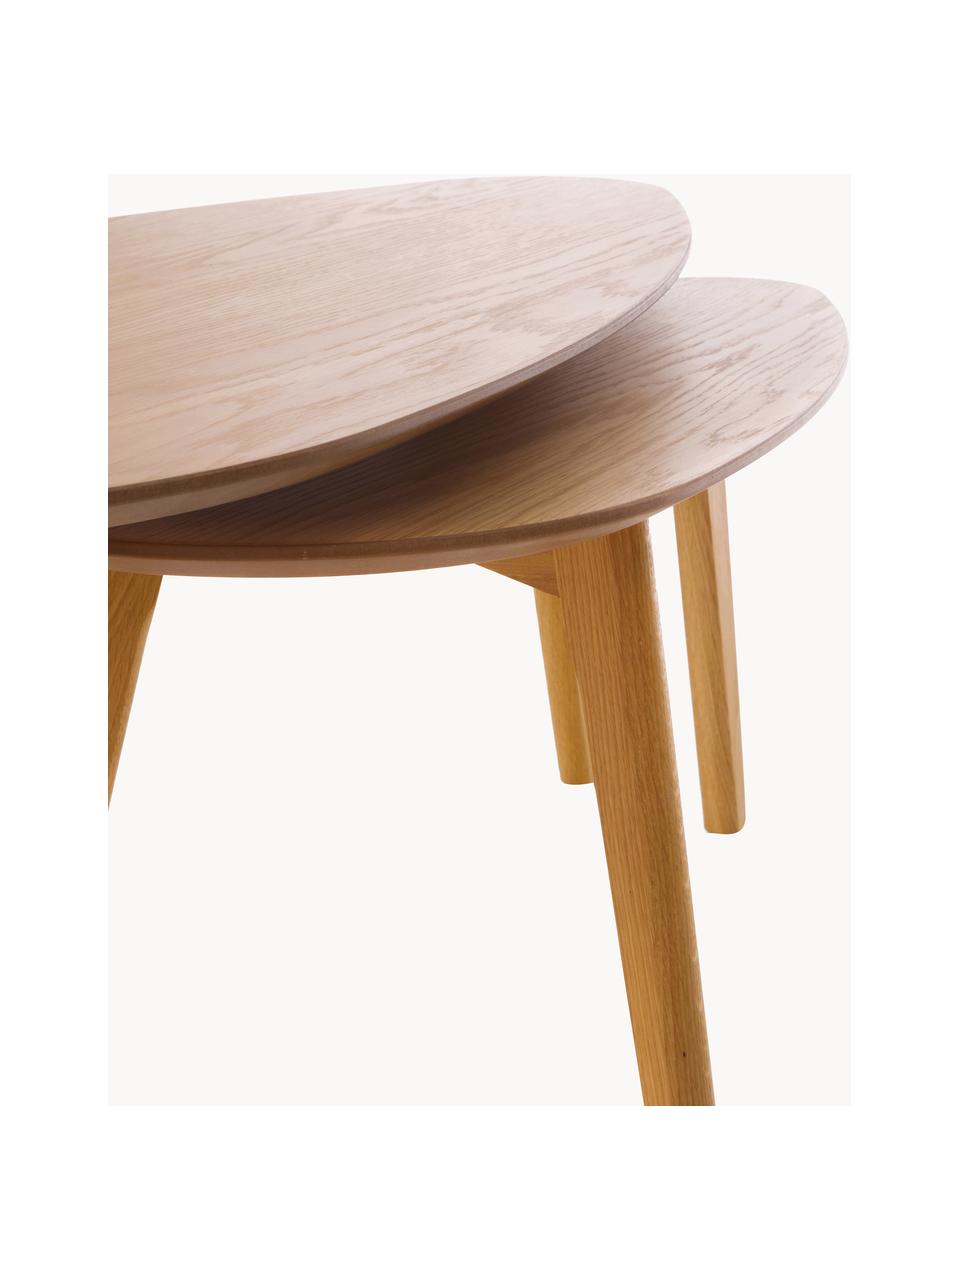 Komplet stolików kawowych z drewna Bloom, 2 elem., Nogi: drewno dębowe, Drewno naturalne, Komplet z różnymi rozmiarami